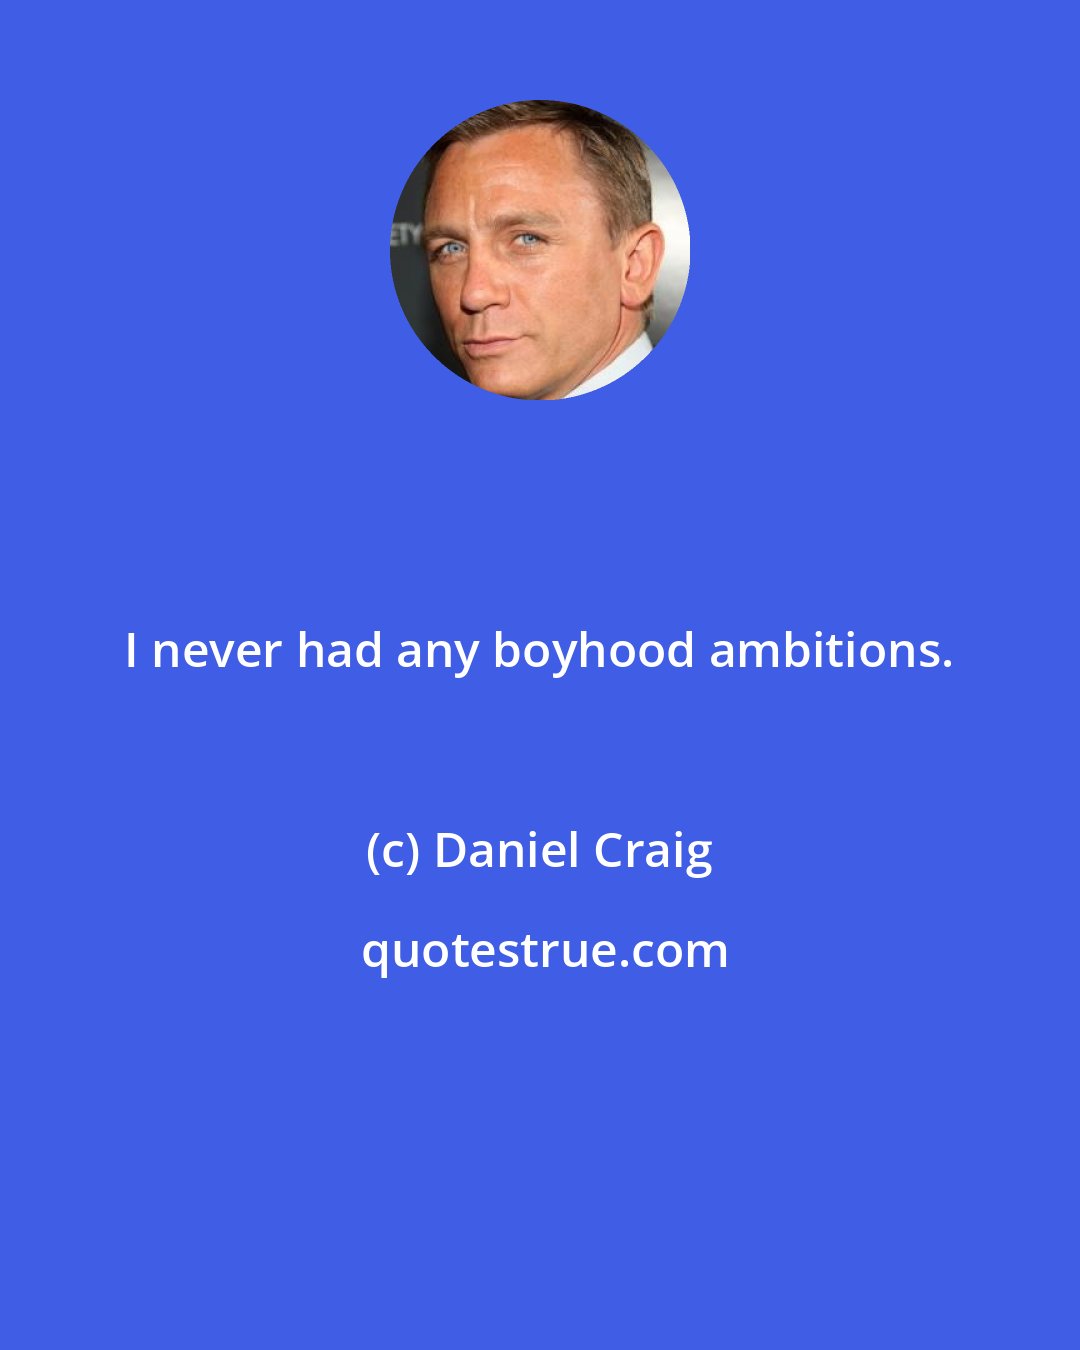 Daniel Craig: I never had any boyhood ambitions.